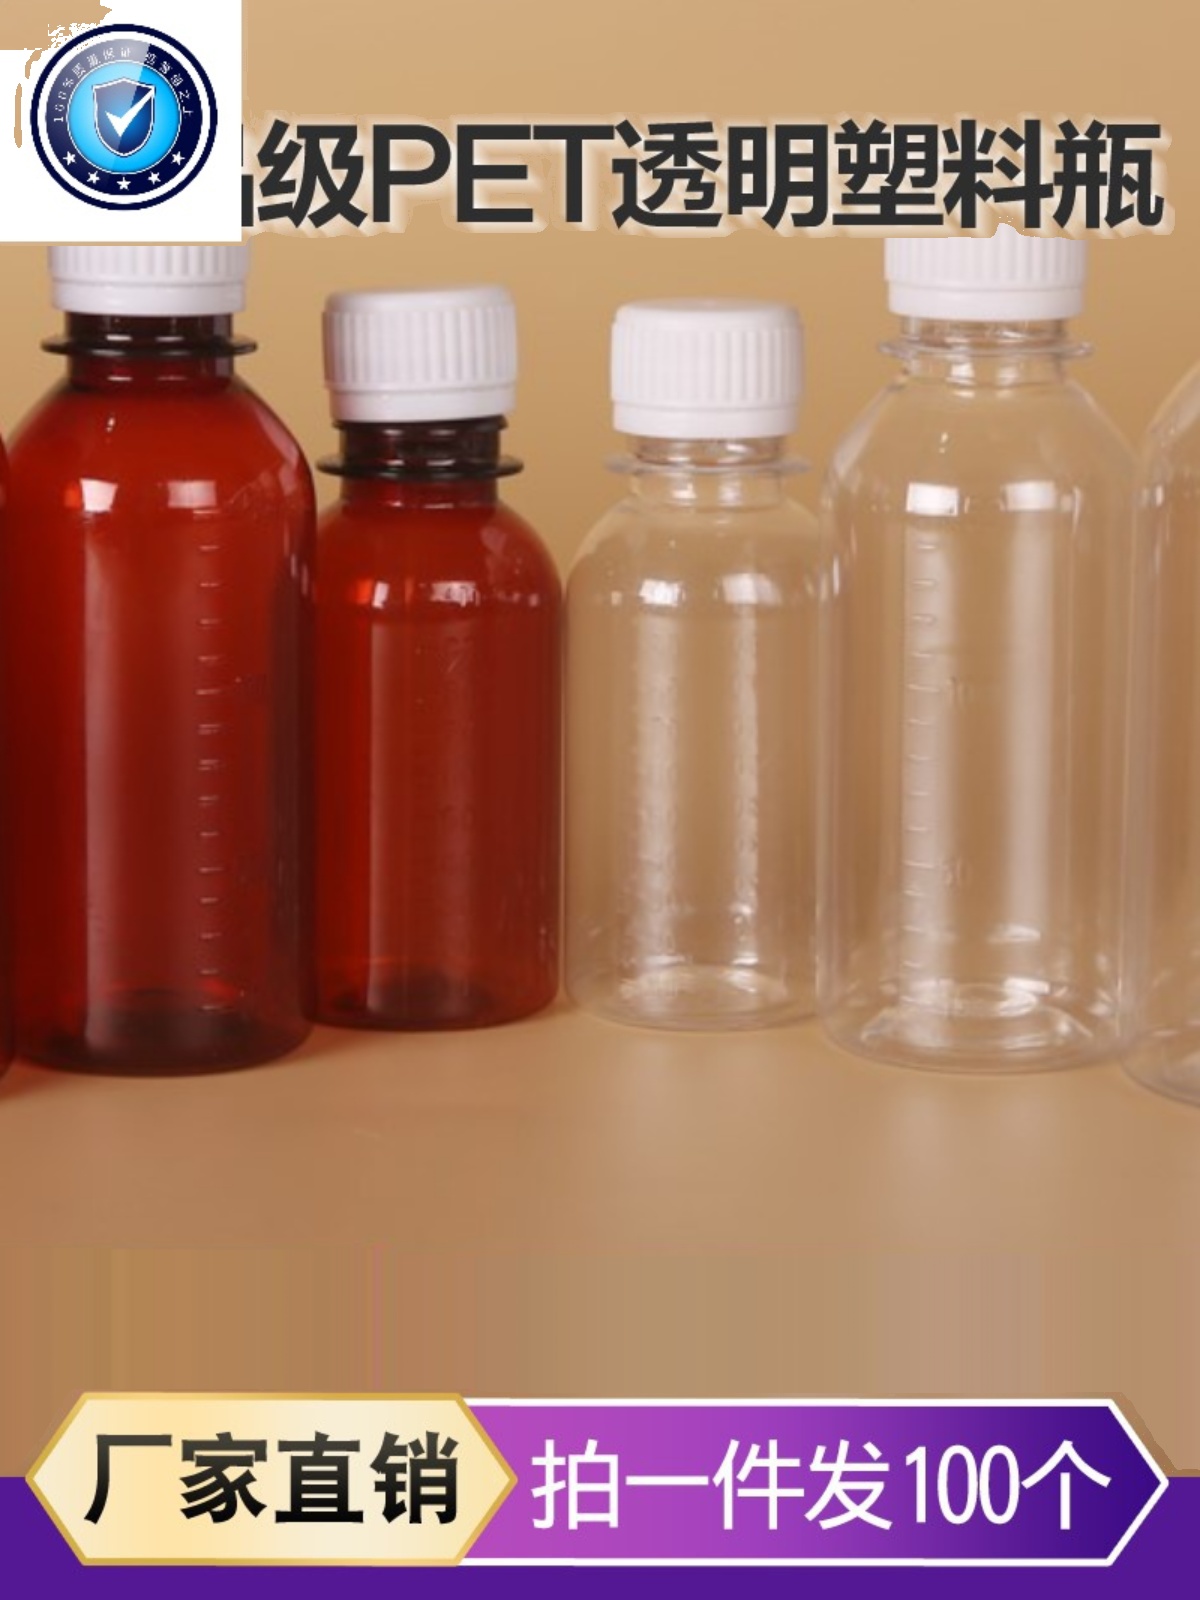 。油品取样瓶油样瓶透明小口塑料分装瓶液体样Q品取样瓶密封刻度